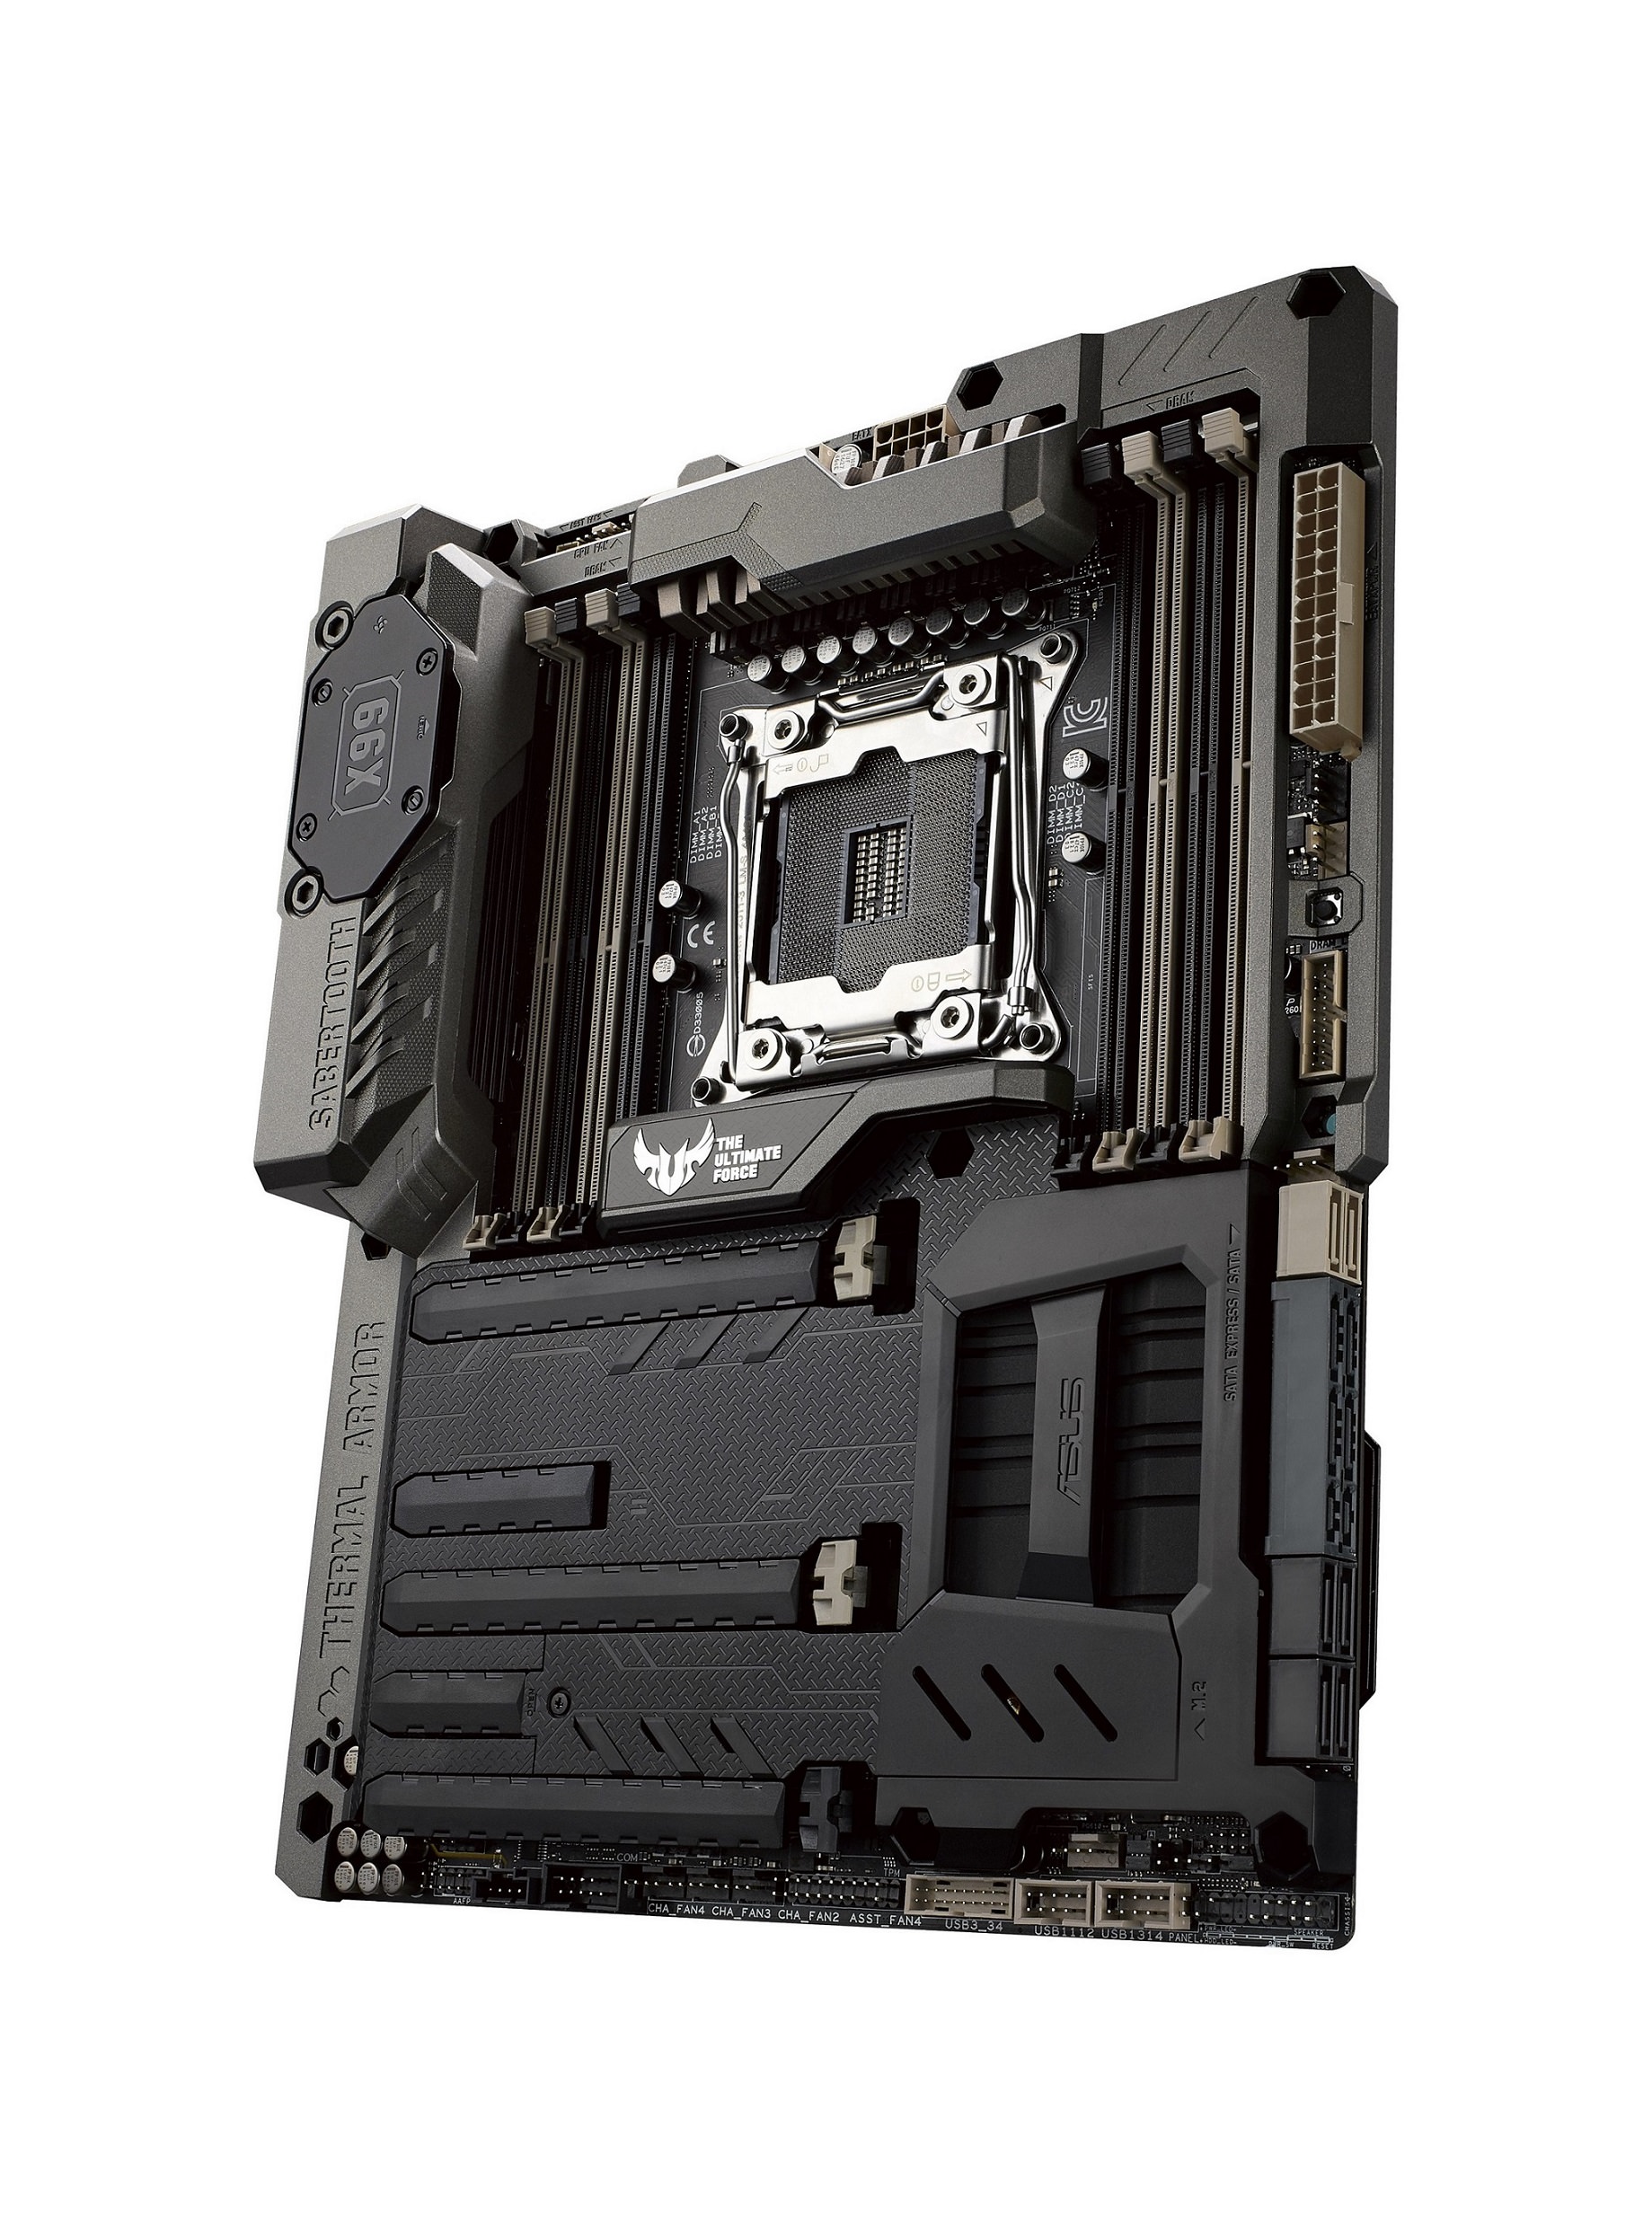 華碩X99指定型號主機板內建獨家USB BIOS Flashback功能，使用者可預先將最新的BIOS下載至USB隨身碟等儲存裝置輕鬆更新(圖為SABERTOOTH X99)